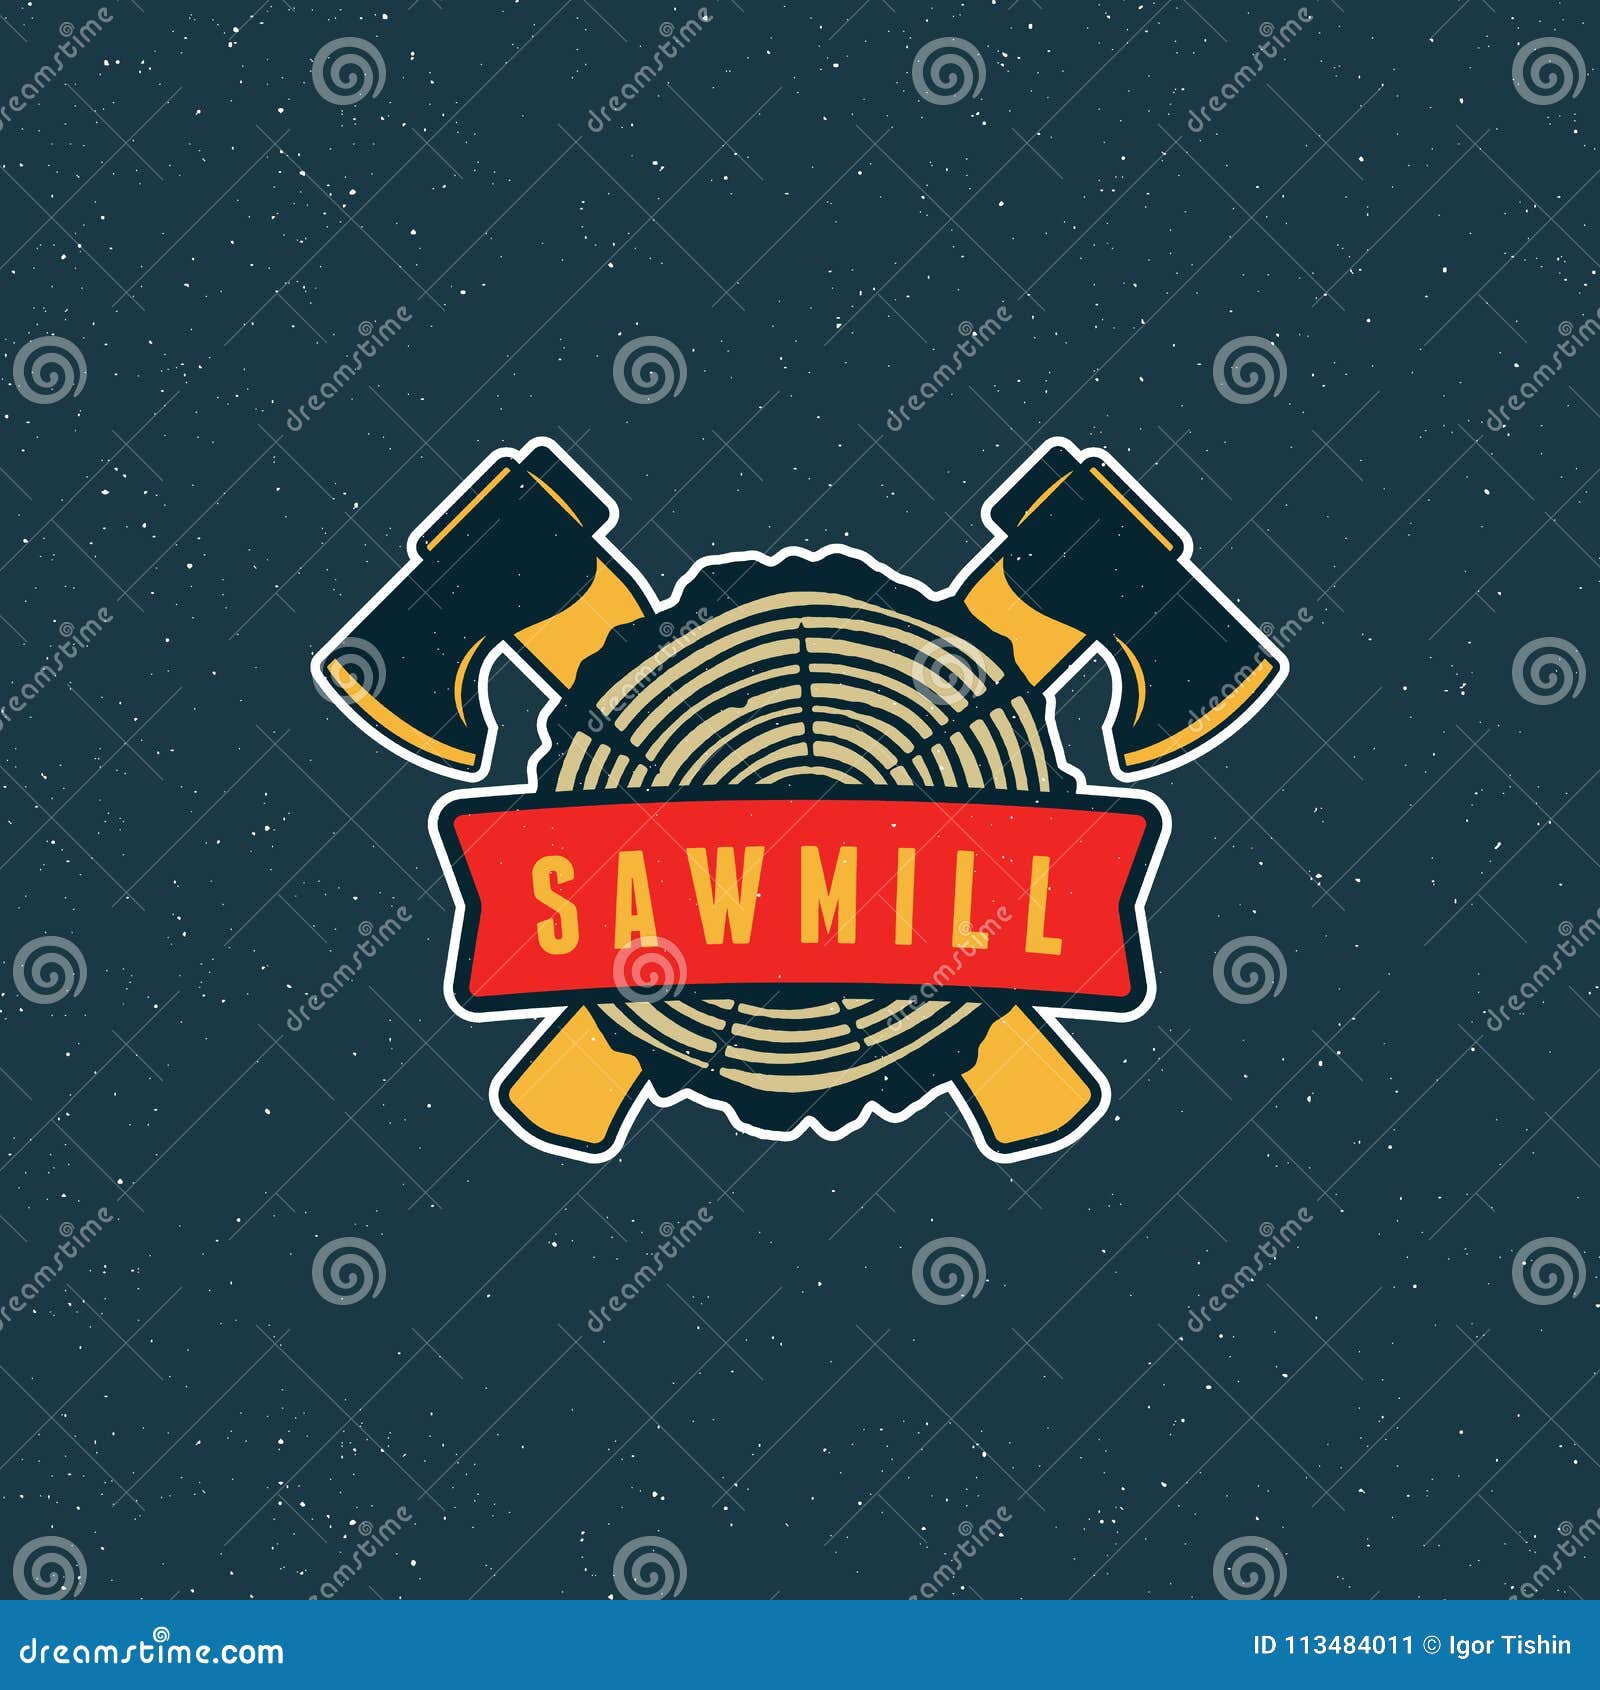 sawmill logo. retro styled woodwork emblem.  